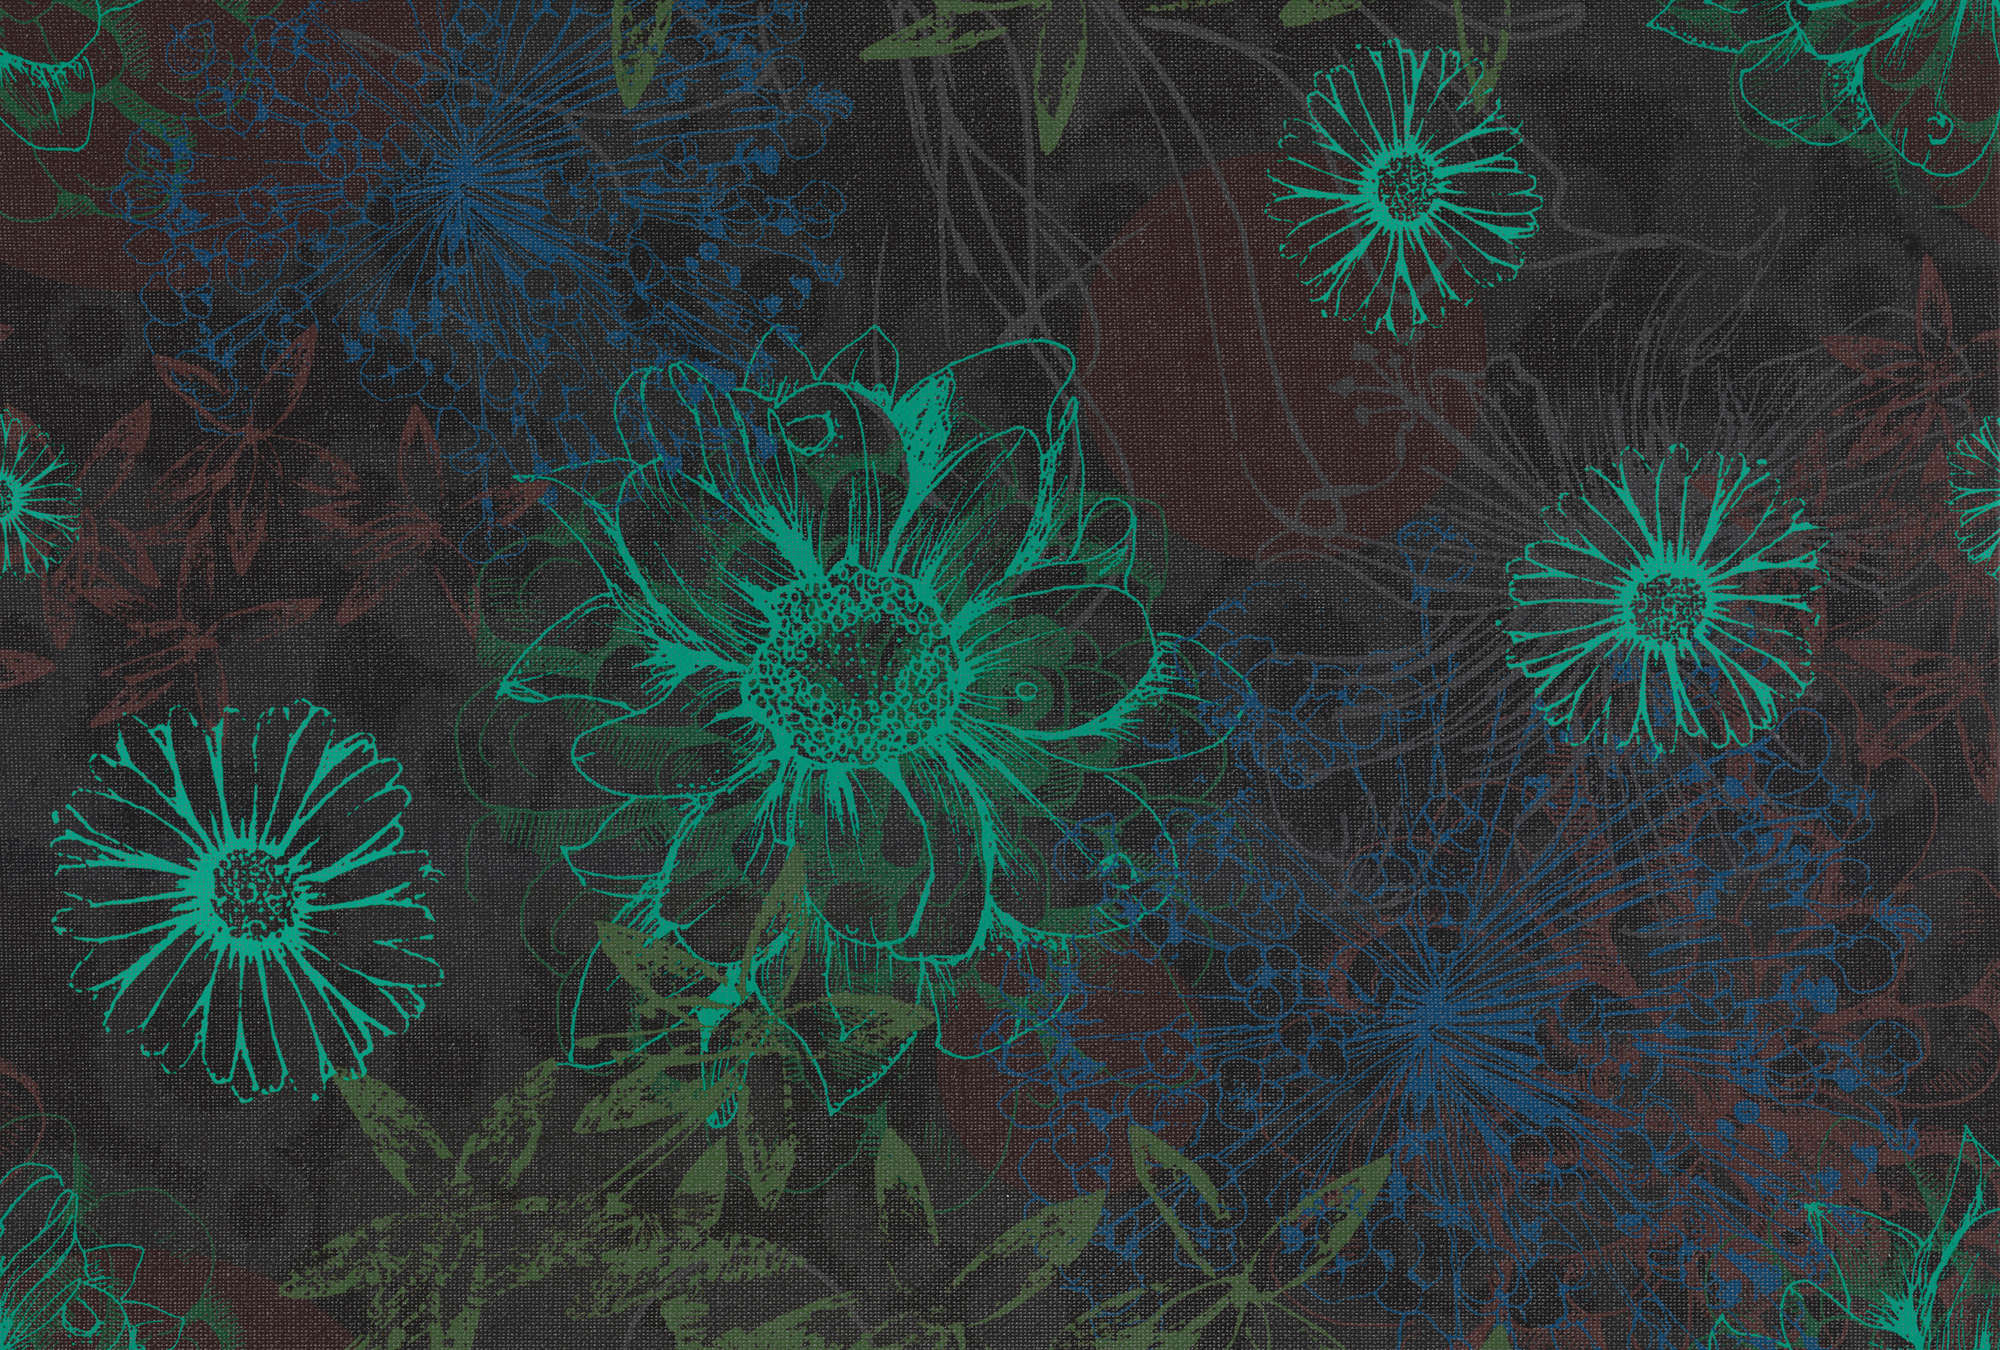             Blumen Fototapete mit leuchtendem Blütenmuster – Grün, Blau, Braun
        